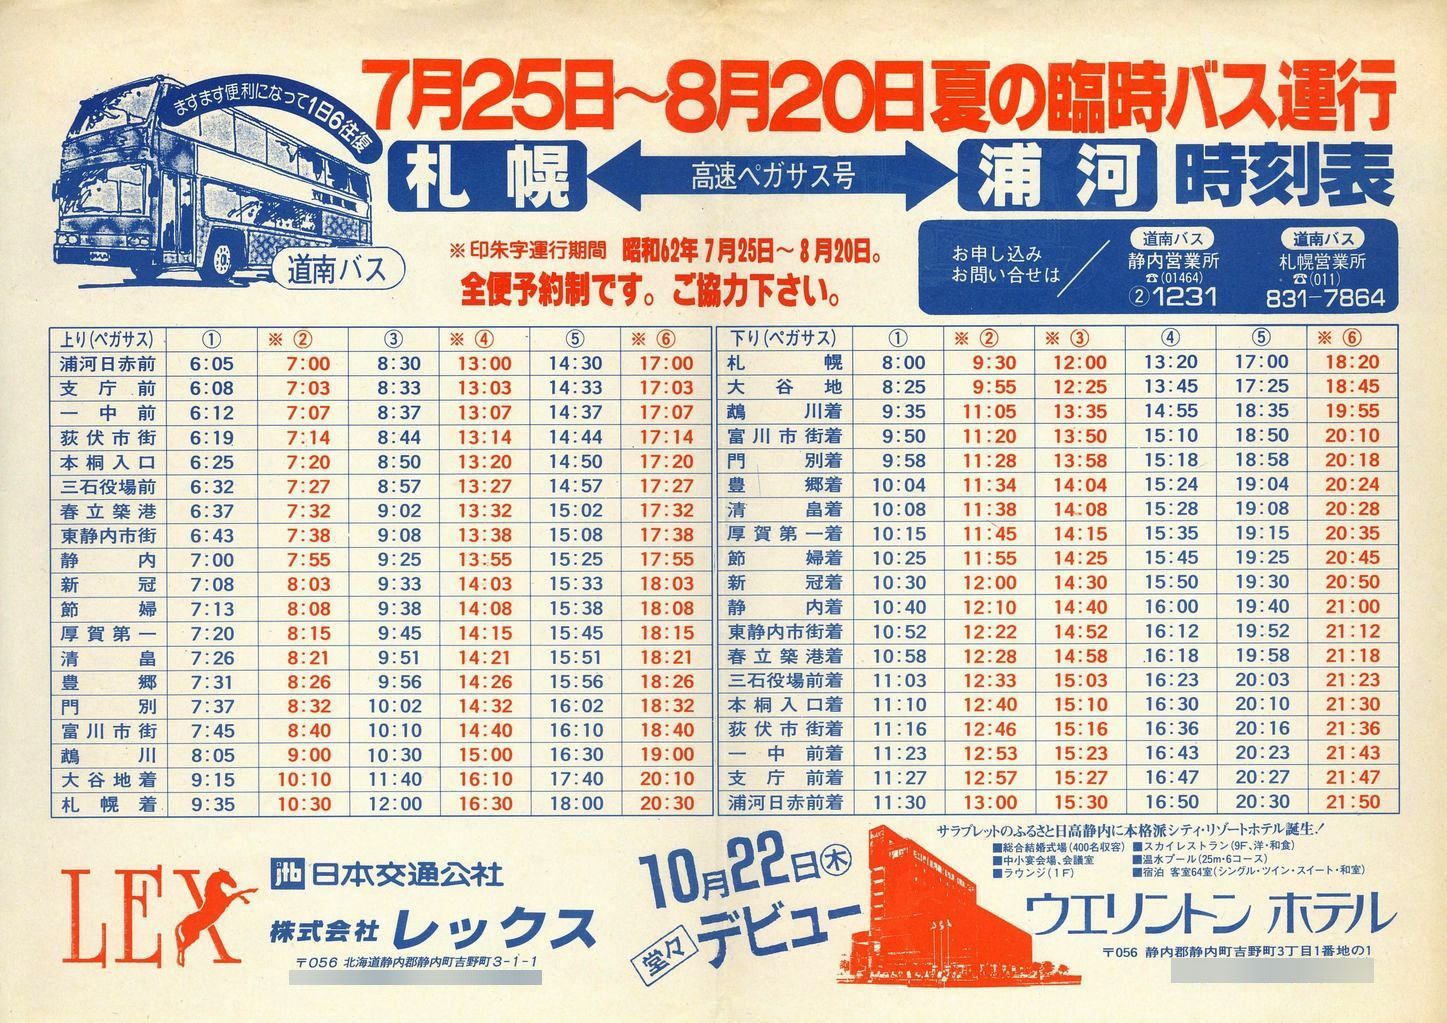 1987-07-25改正_道南バス_高速ペガサス号時刻表